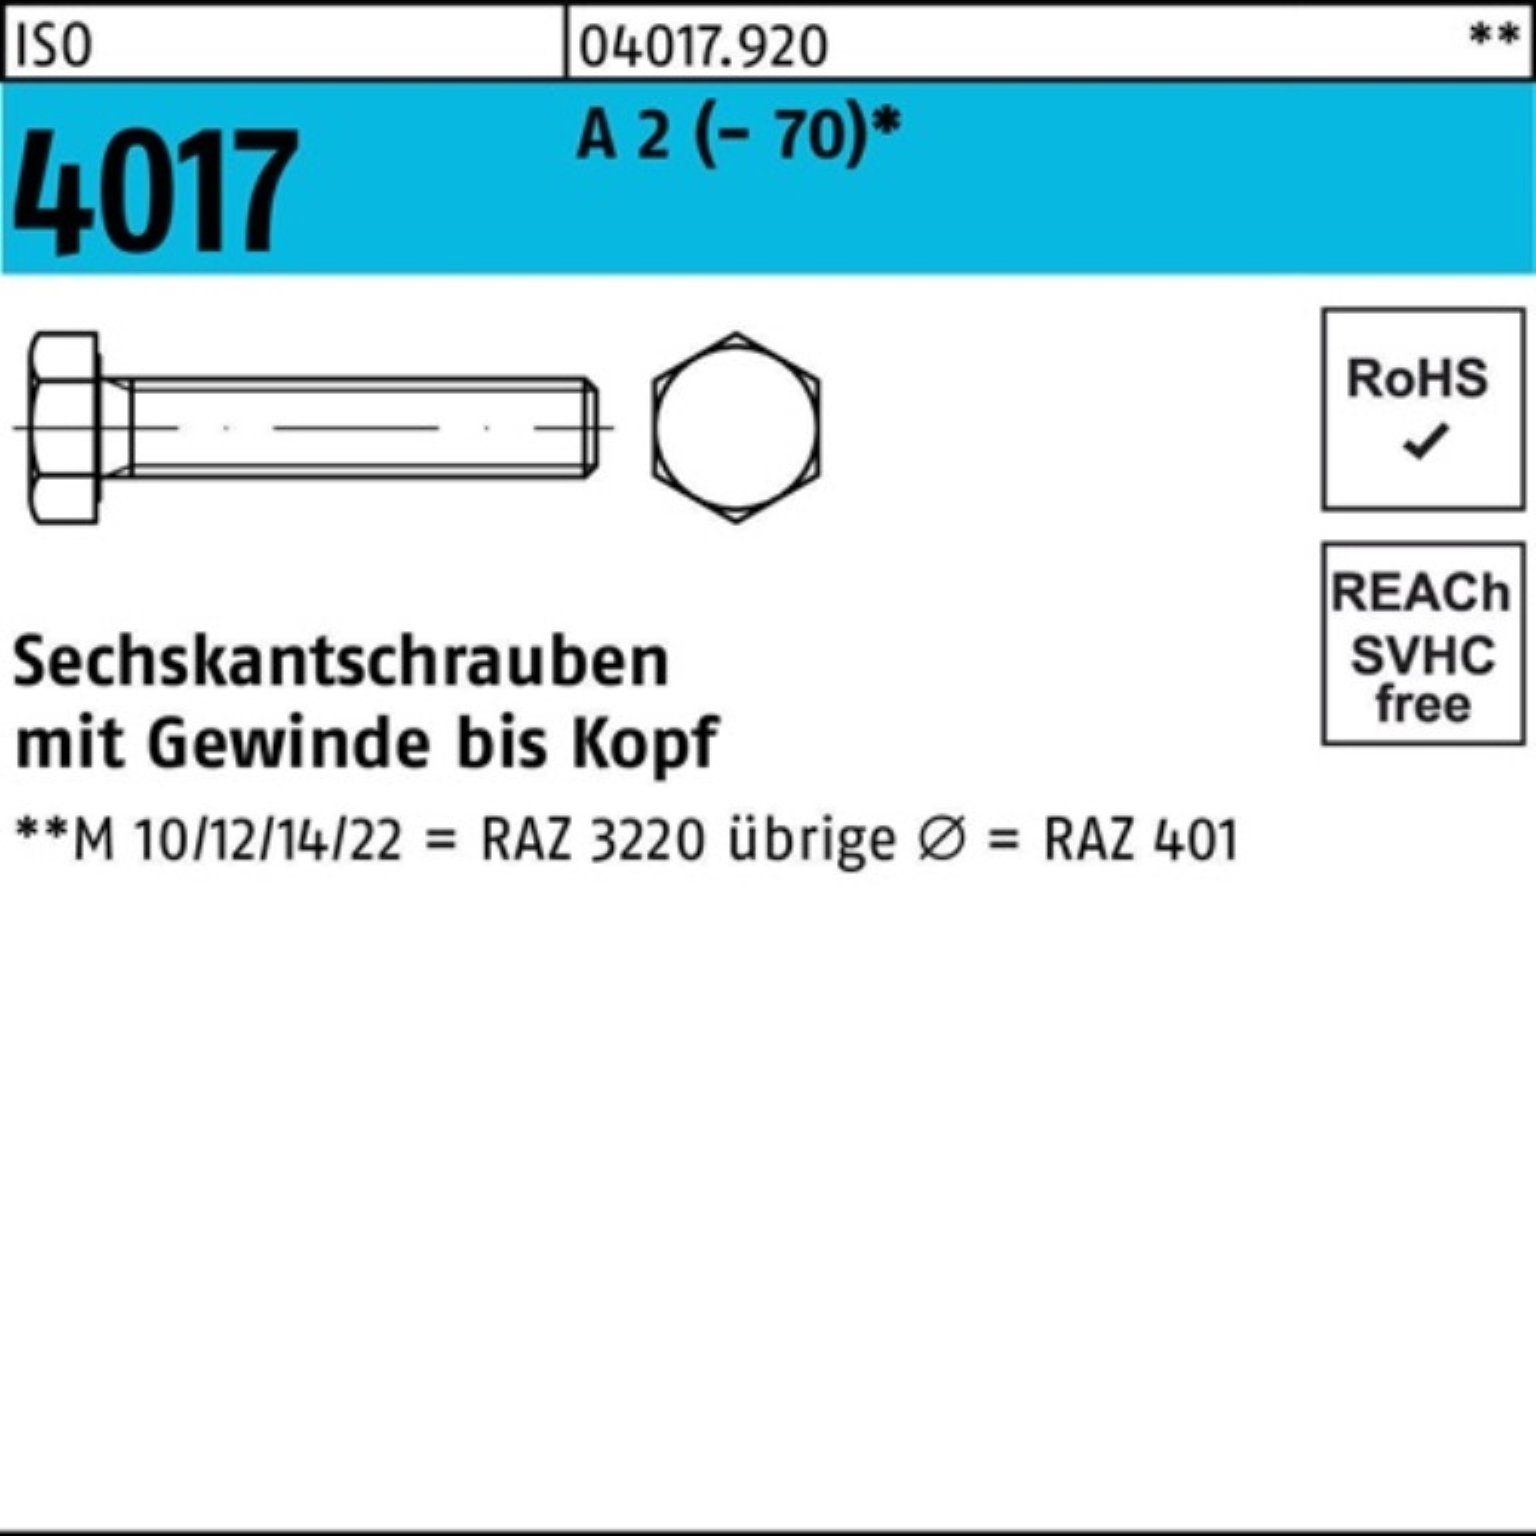 Bufab Sechskantschraube 100er Pack Sechskantschraube ISO 4017 VG M8x 130 A 2 (70) 50 Stück